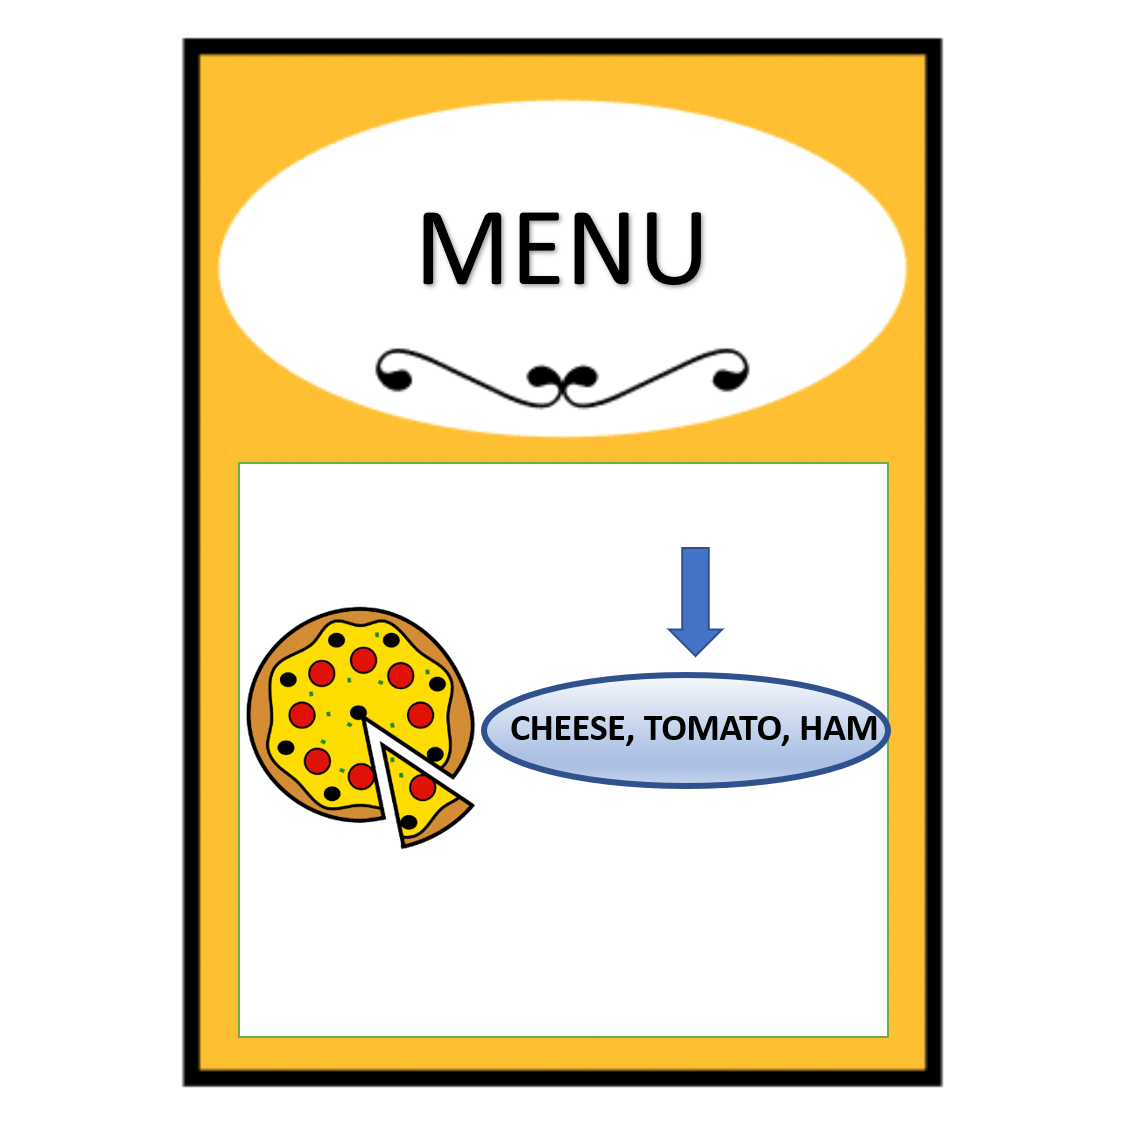 En la imagen aparece el menú de un restaurante, en el que la imagen de un plato va acompañada de los ingredientes que contiene